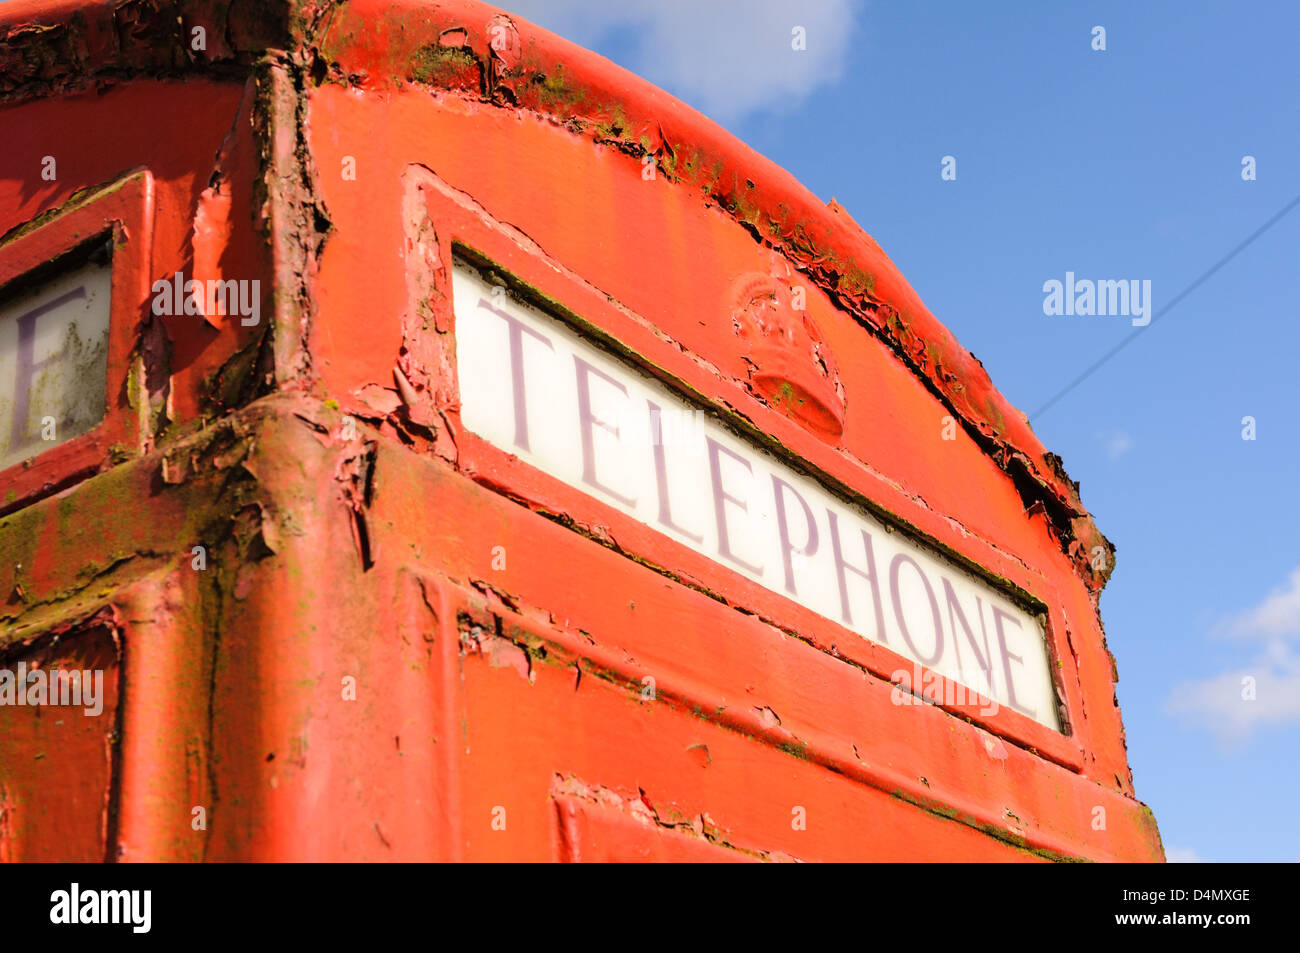 Red British/English telephone box Stock Photo